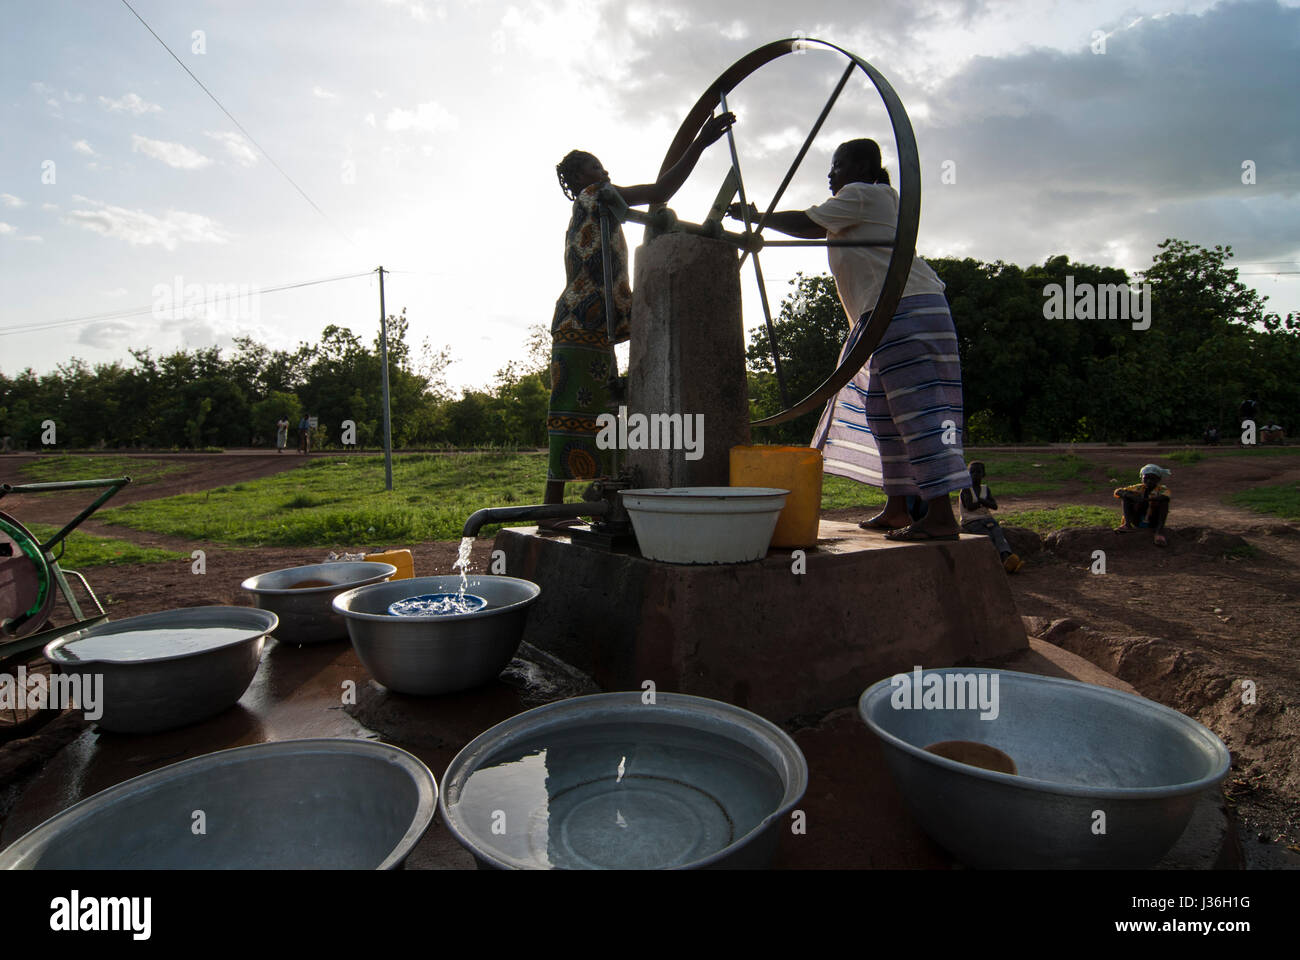 BURKINA FASO, Gaoua , women fetch drinking water from water pump with turning wheel in village / Burkina Faso, Gaoua, Frauen holen Wasser von einem Brunnen mit Drehpumpe Stock Photo